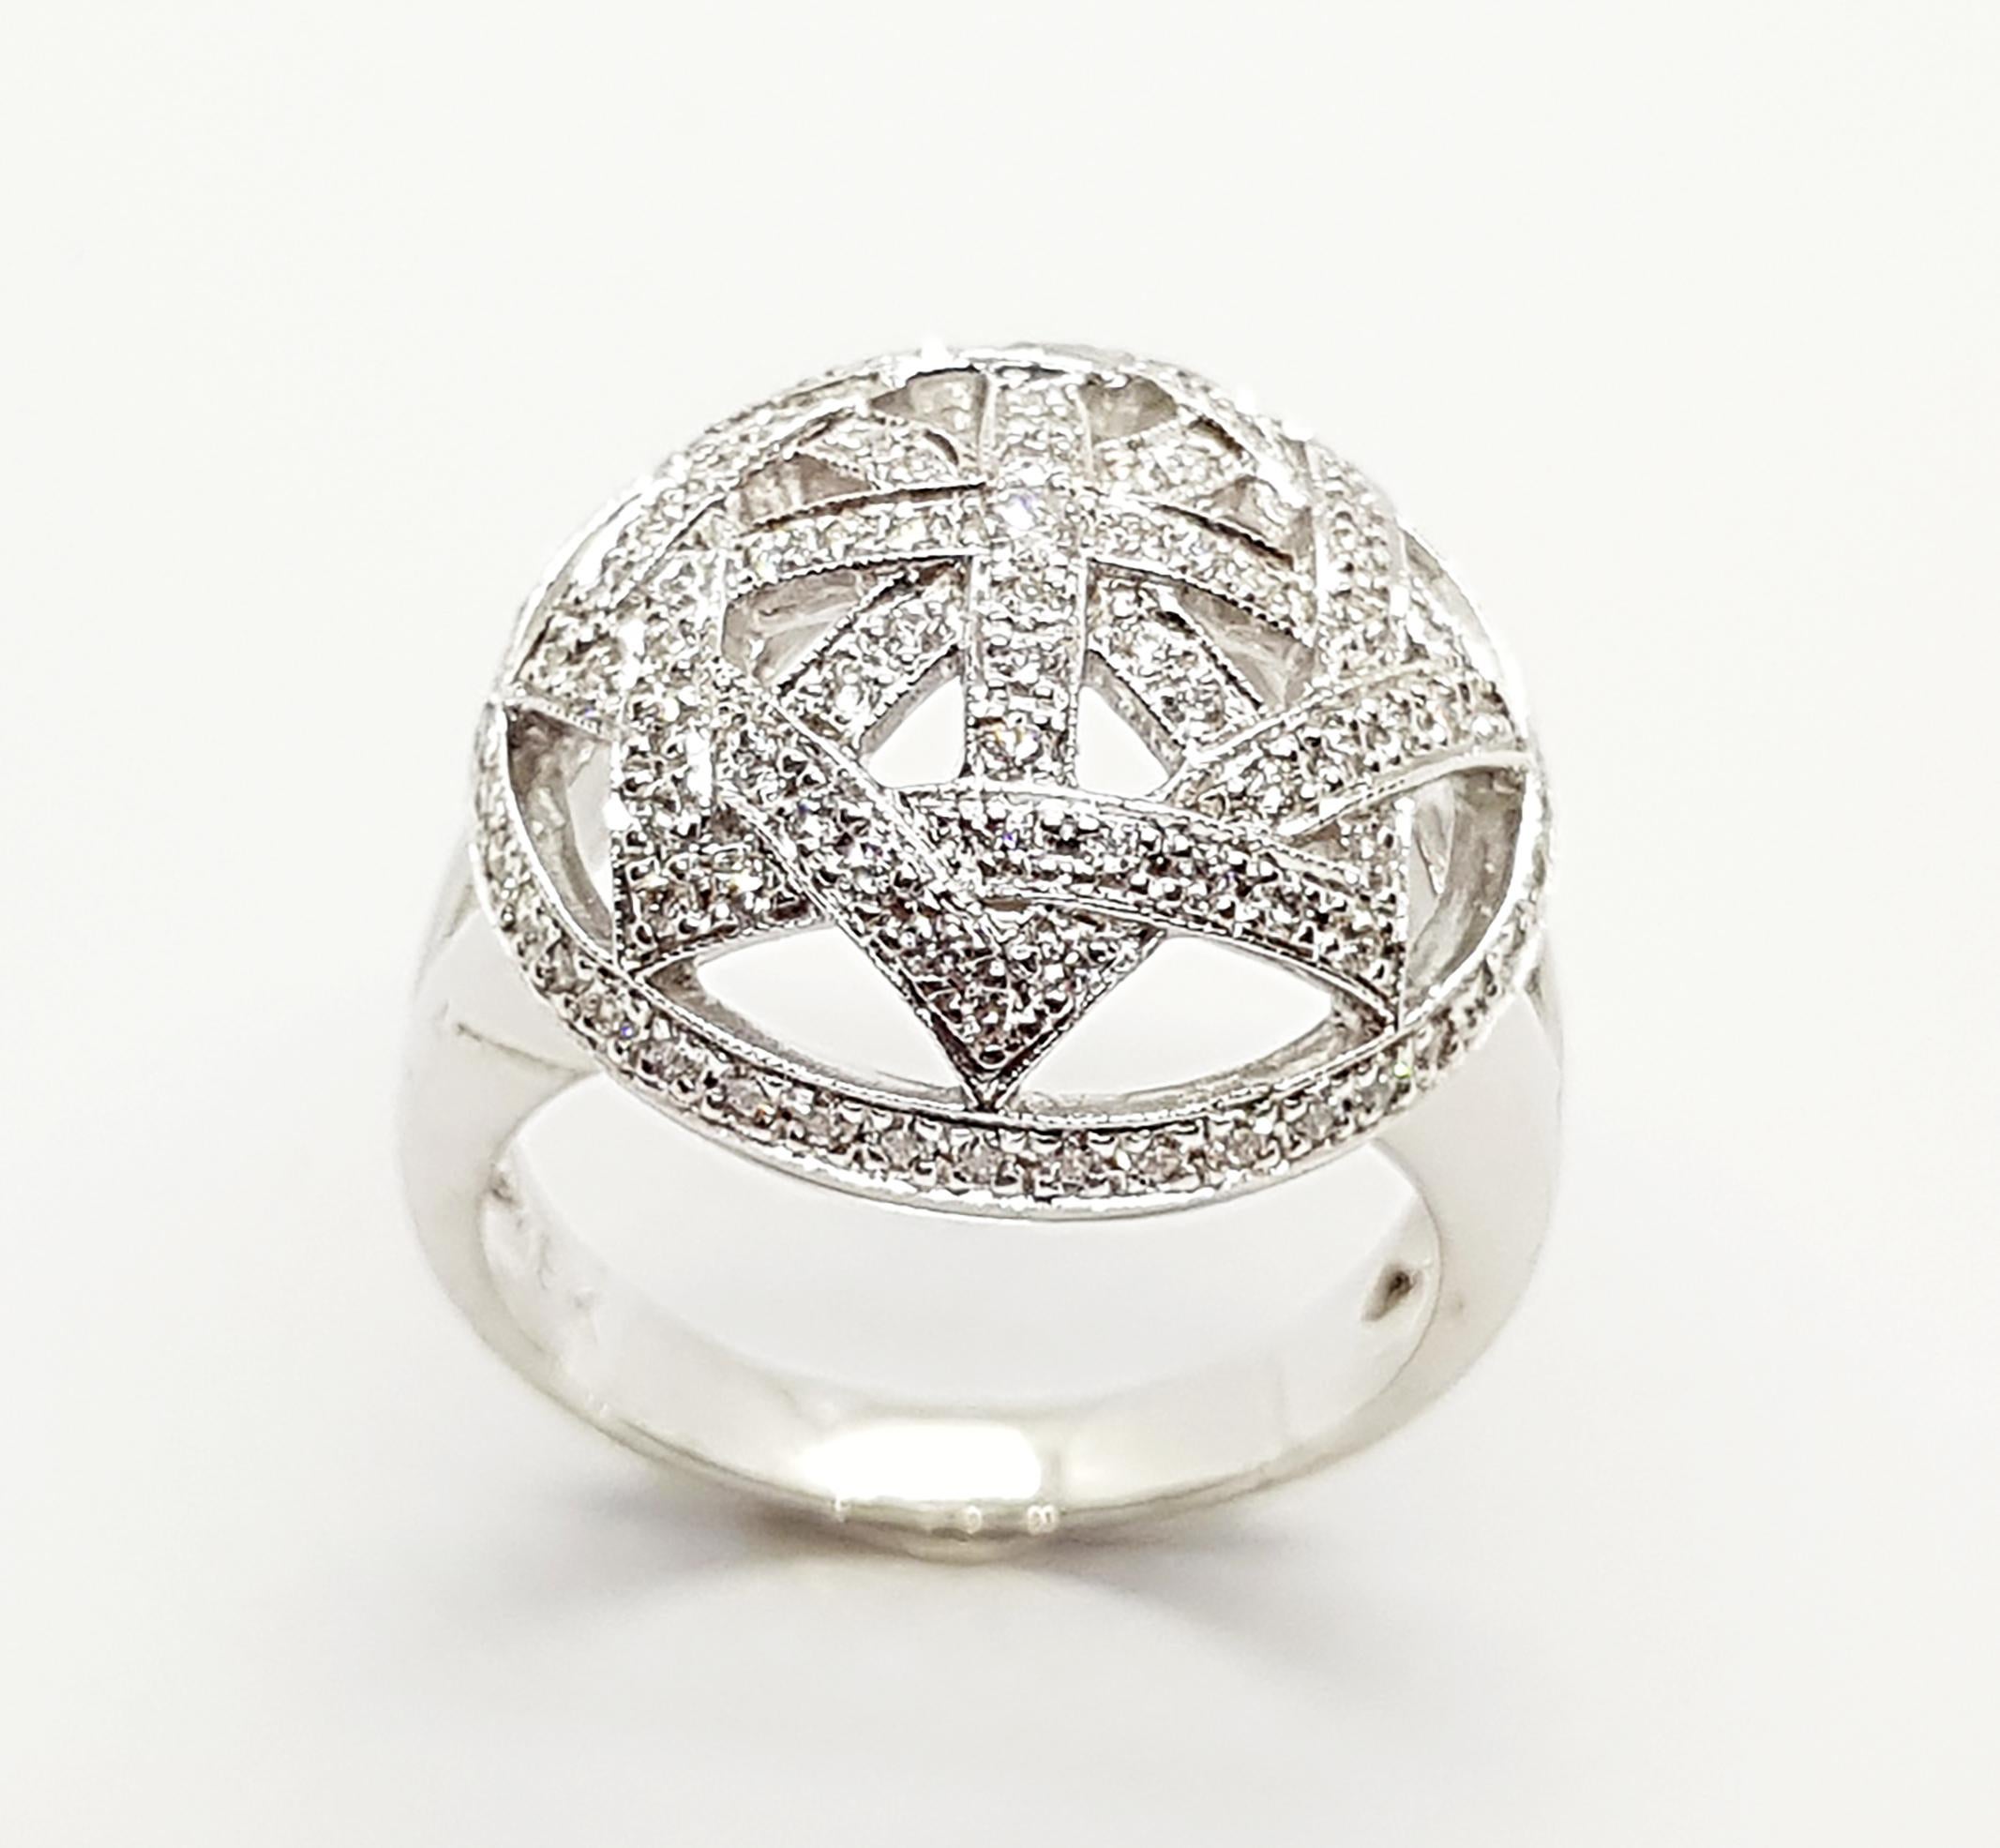 Diamond 0.63 carat Ring set in 18 Karat White Gold Settings

Width:  1.8 cm 
Length: 1.8 cm
Ring Size: 56
Total Weight: 9.11 grams

